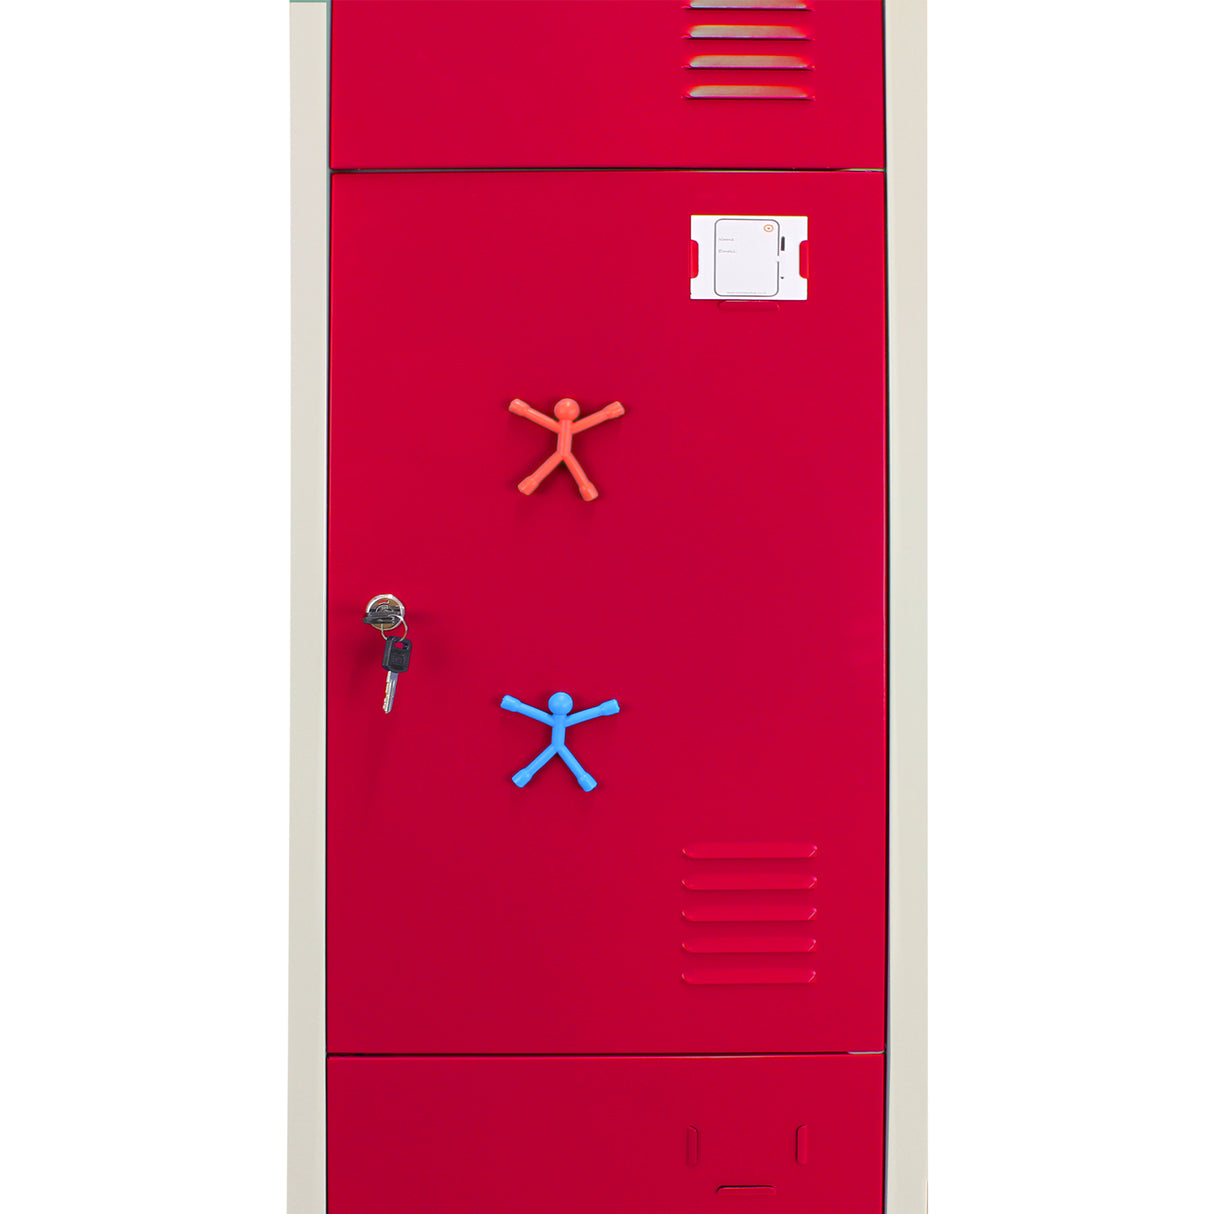 3 x casiers de rangement en métal - Trois portes, rouge - A plat